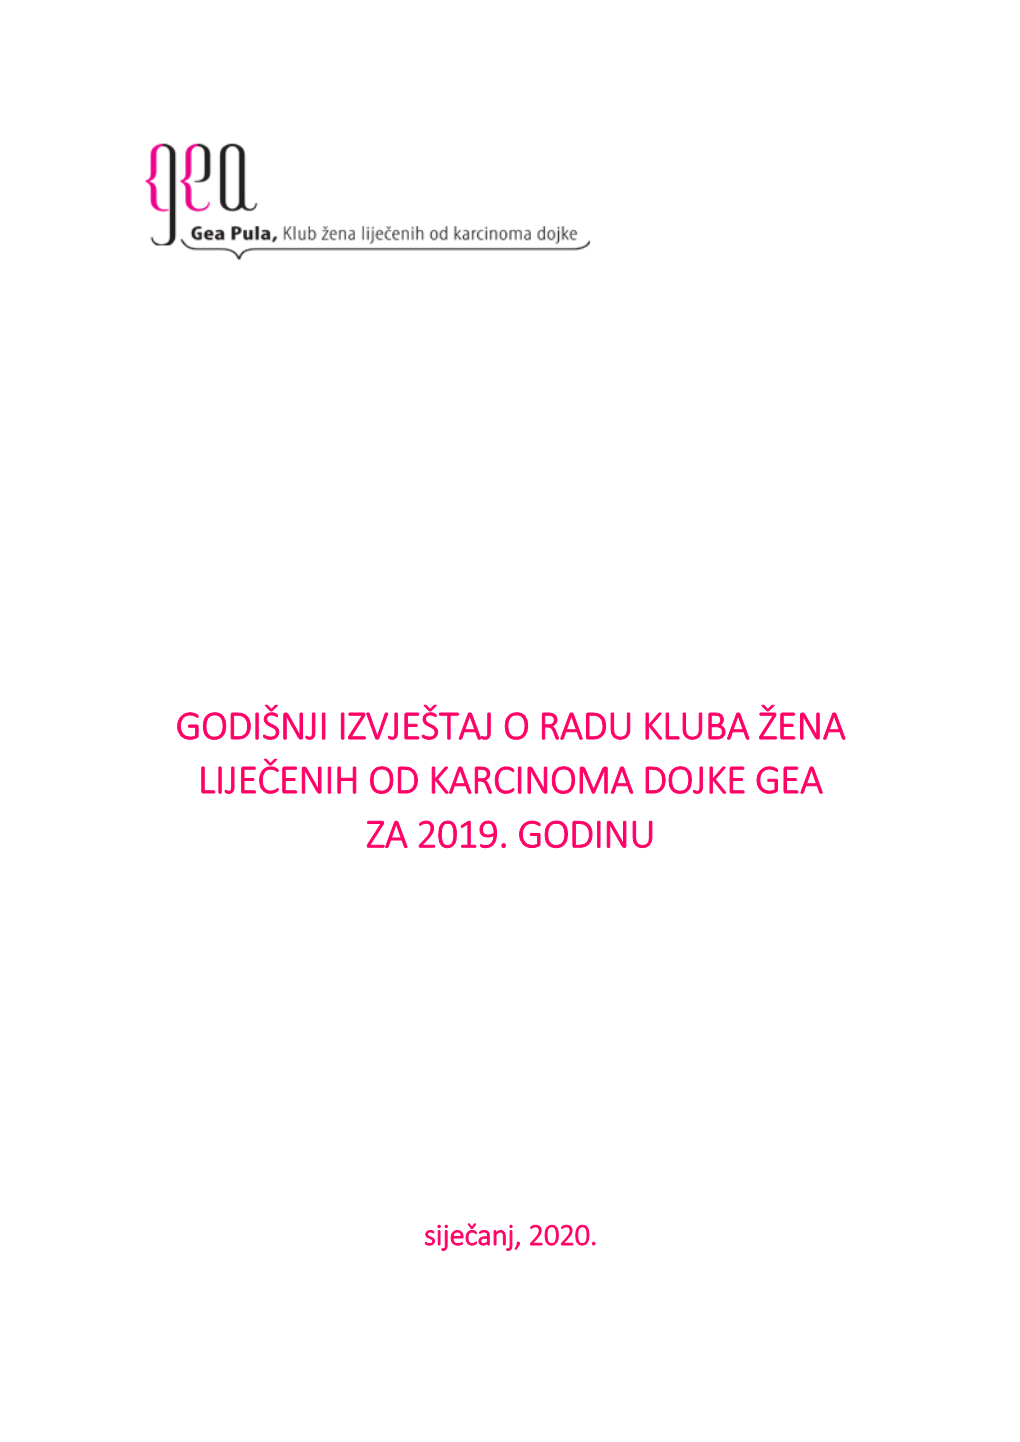 Godišnji Izvještaj O Radu Kluba Žena Liječenih Od Karcinoma Dojke Gea Za 2019. Godinu